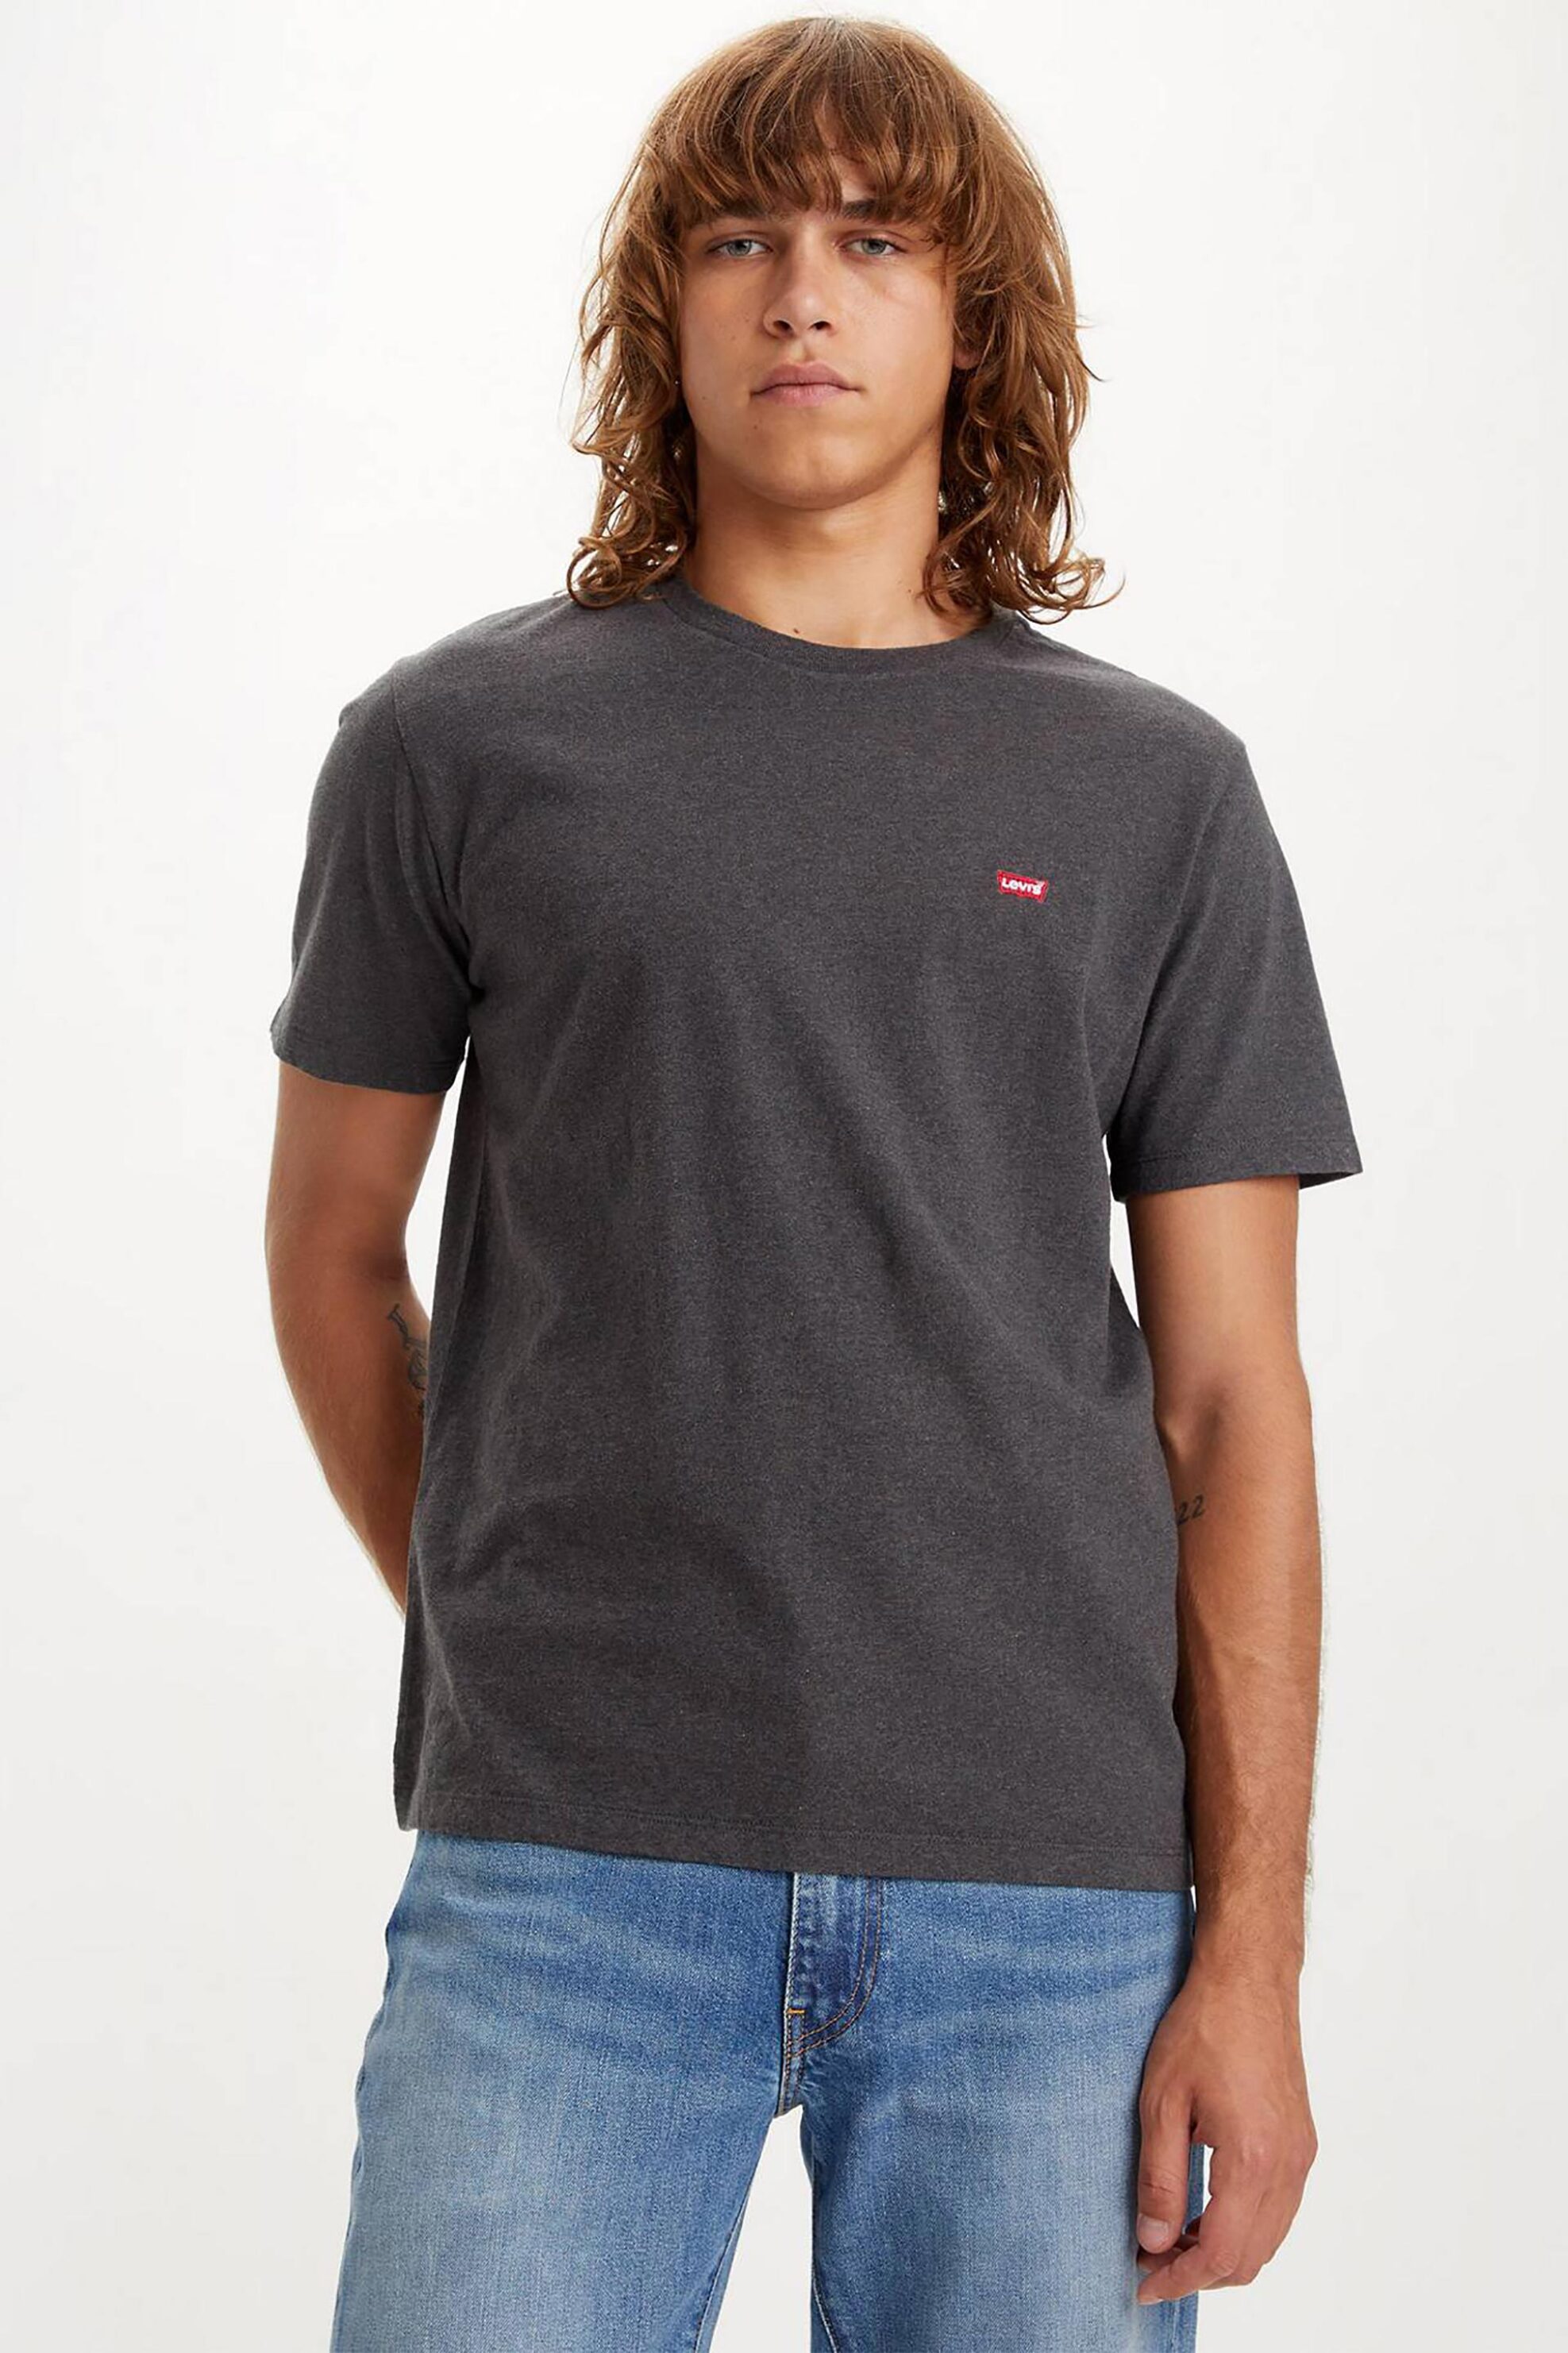 Ανδρική Μόδα > Ανδρικά Ρούχα > Ανδρικές Μπλούζες > Ανδρικά T-Shirts Levi's® ανδρικό T-shirt μονόχρωμο με λογότυπο Regular Fit "Original Housemark" - 566050149 Ανθρακί